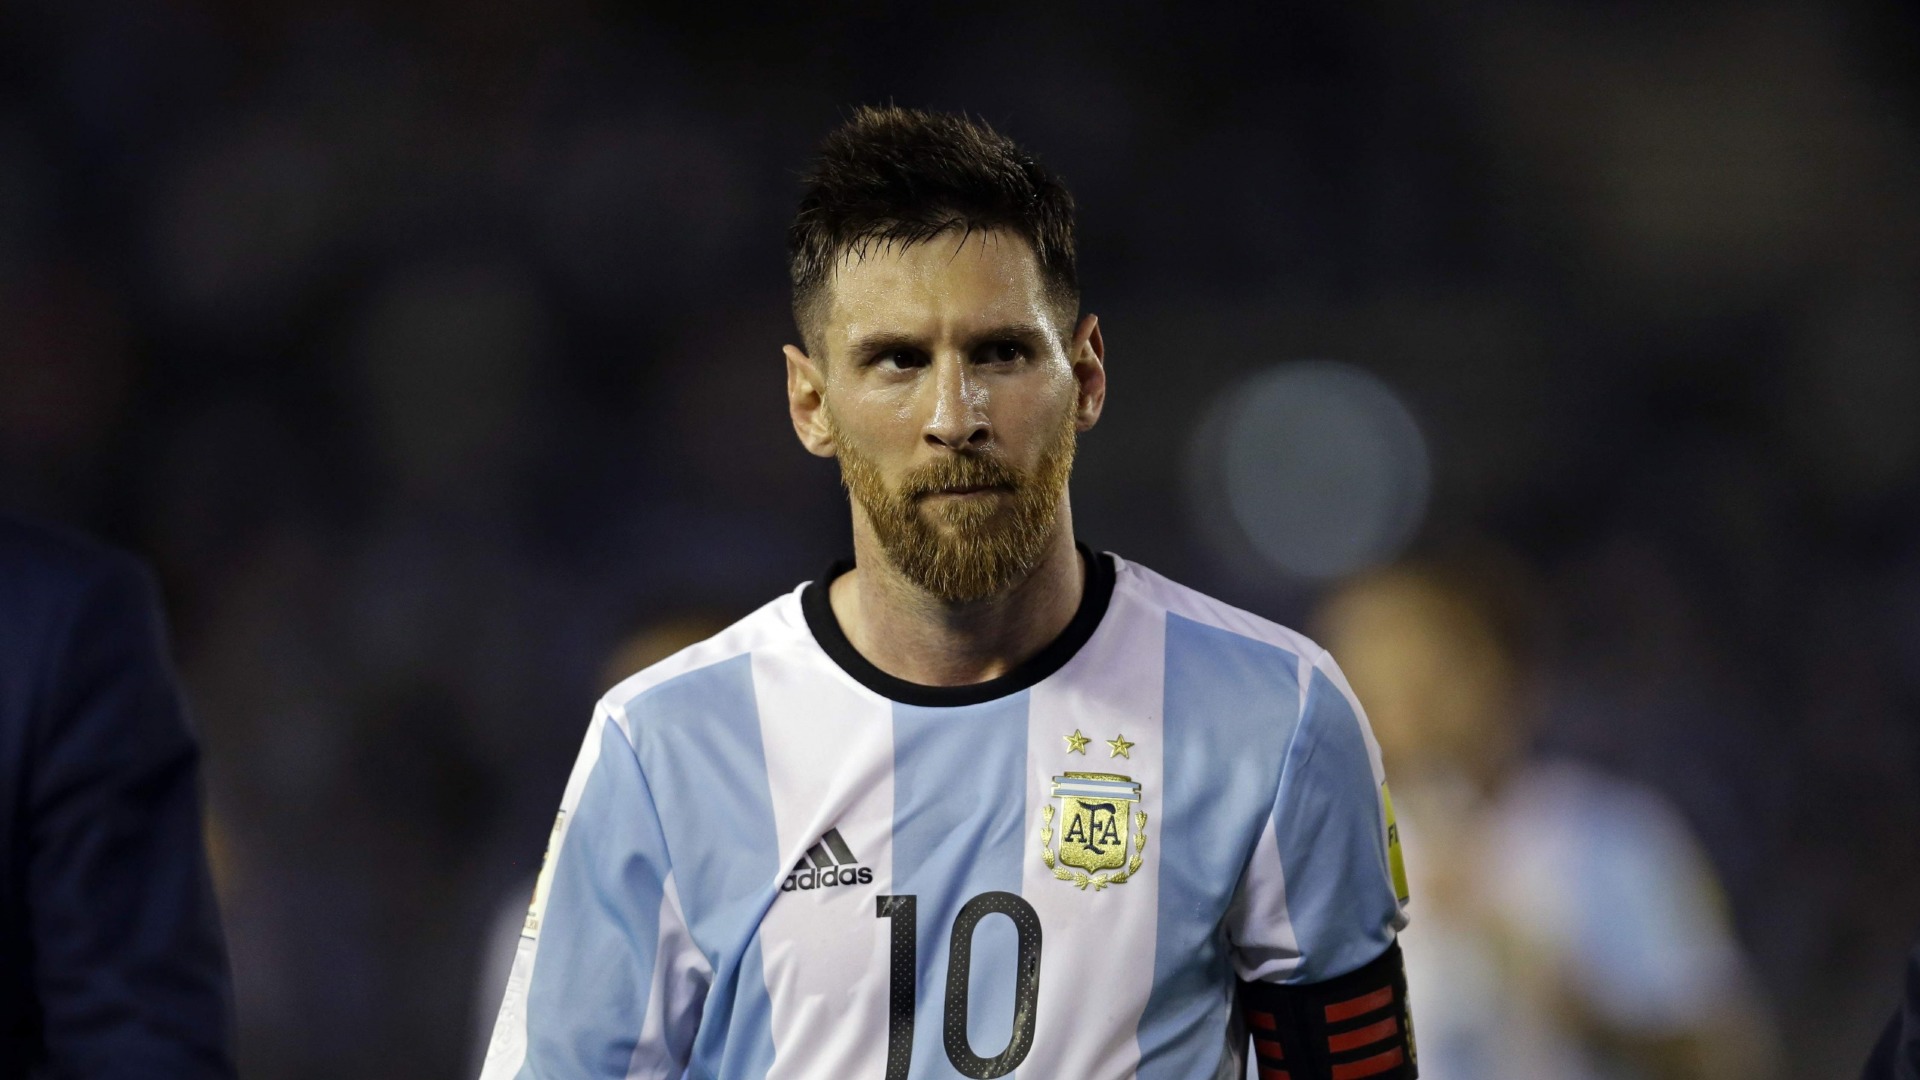 Không chỉ là một cầu thủ xuất sắc, Messi còn là nhà lãnh đạo hiệu quả đã dẫn dắt đội tuyển Argentina đến đỉnh vinh quang. Hãy xem Messi thể hiện tài năng trong trận chung kết!